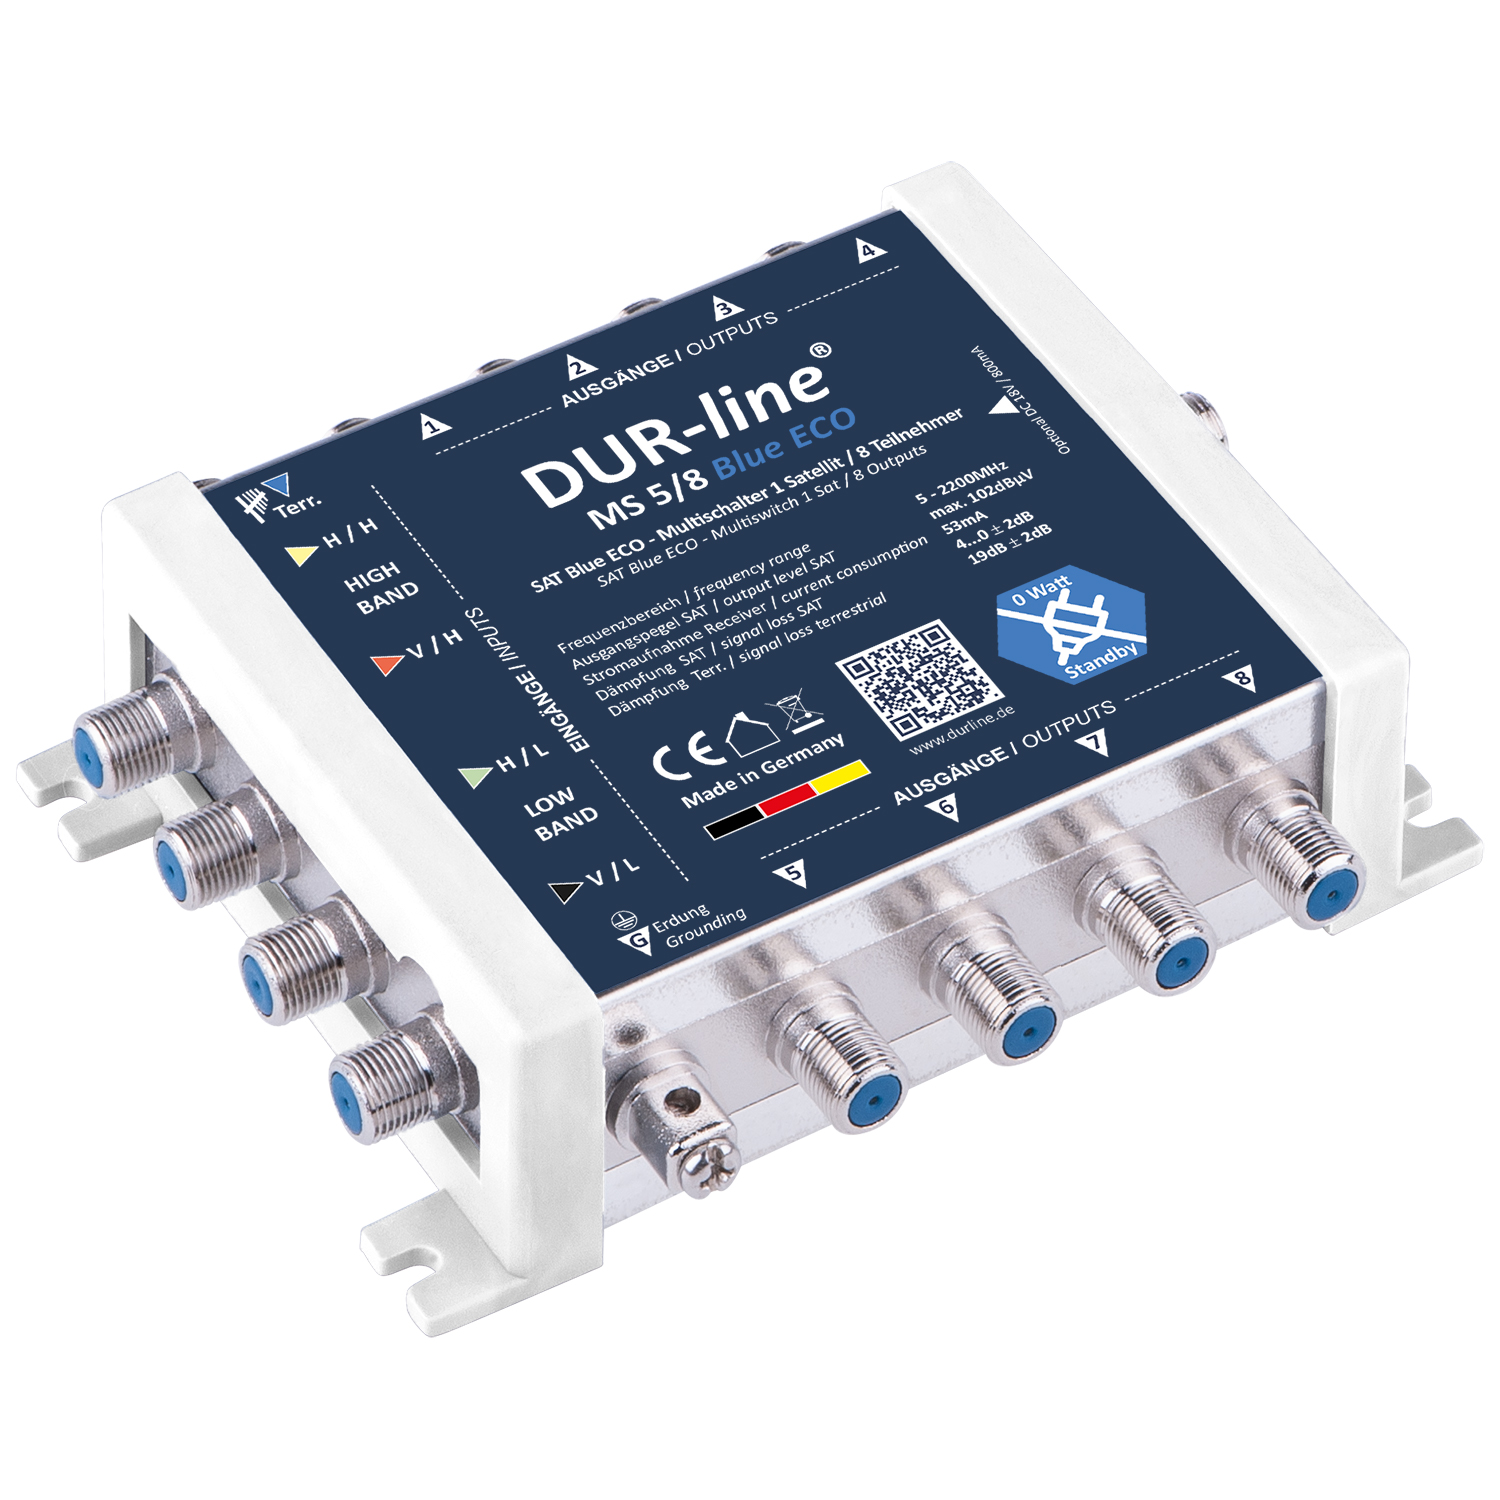 Multischalter 5/8 - DUR-line Blue eco Stromspar für 8 Teilnehmer-/bilder/big/13105_1.jpg